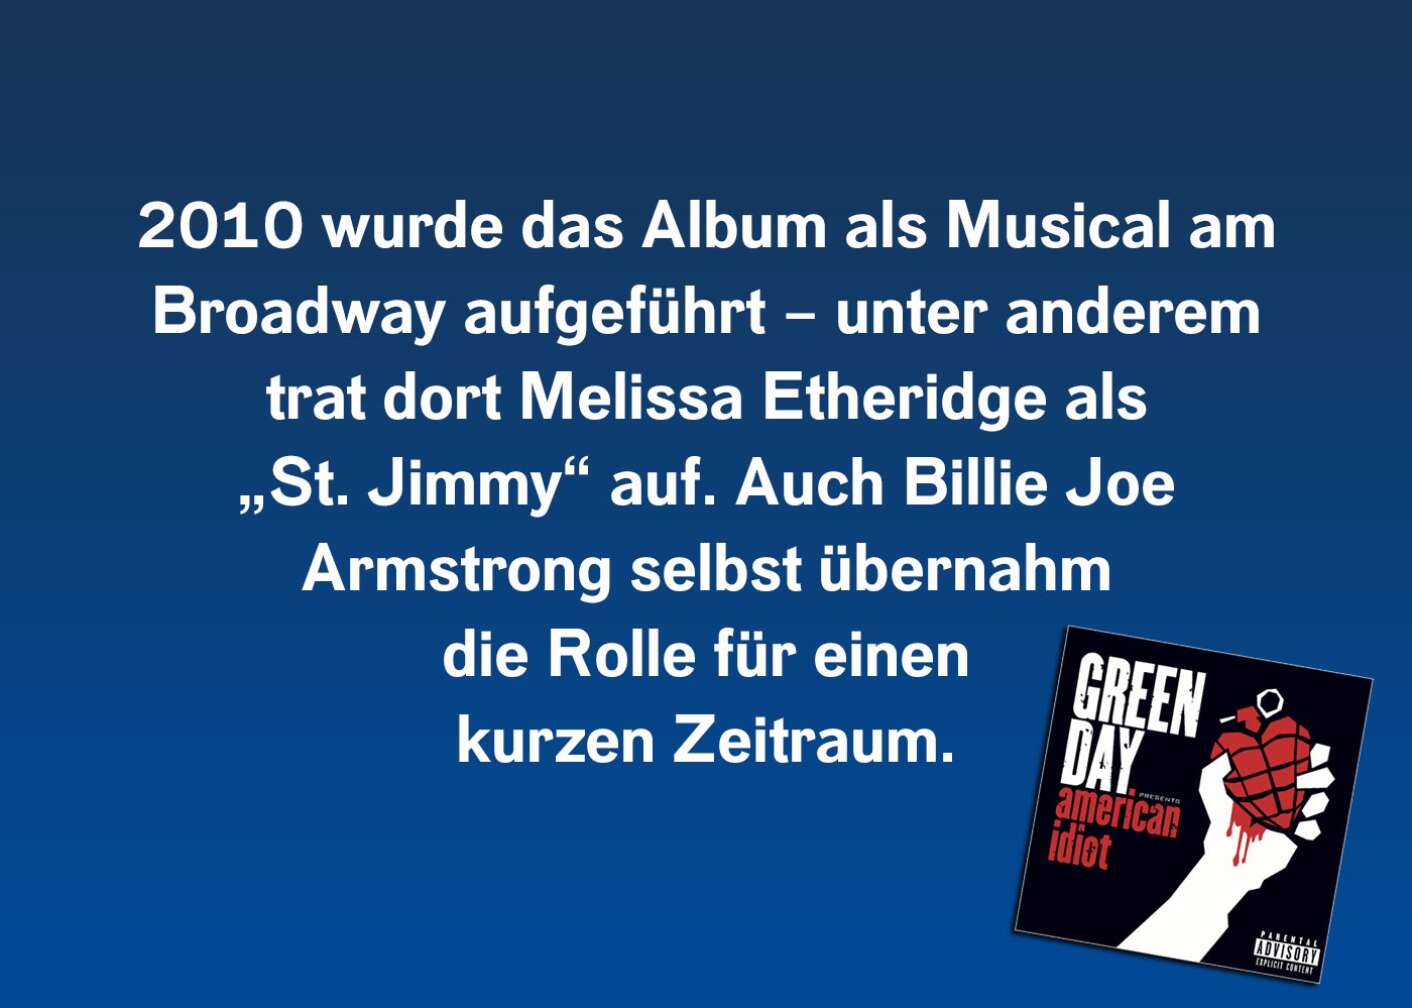 2010 wurde das Album als Musical am Broadway aufgeführt – unter anderem trat dort keine Geringere als Melissa Etheridge als „St. Jimmy“ auf. Auch Billie Joe Armstrong höchstpersönlich übernahm die Rolle für einen kurzen Zeitraum.